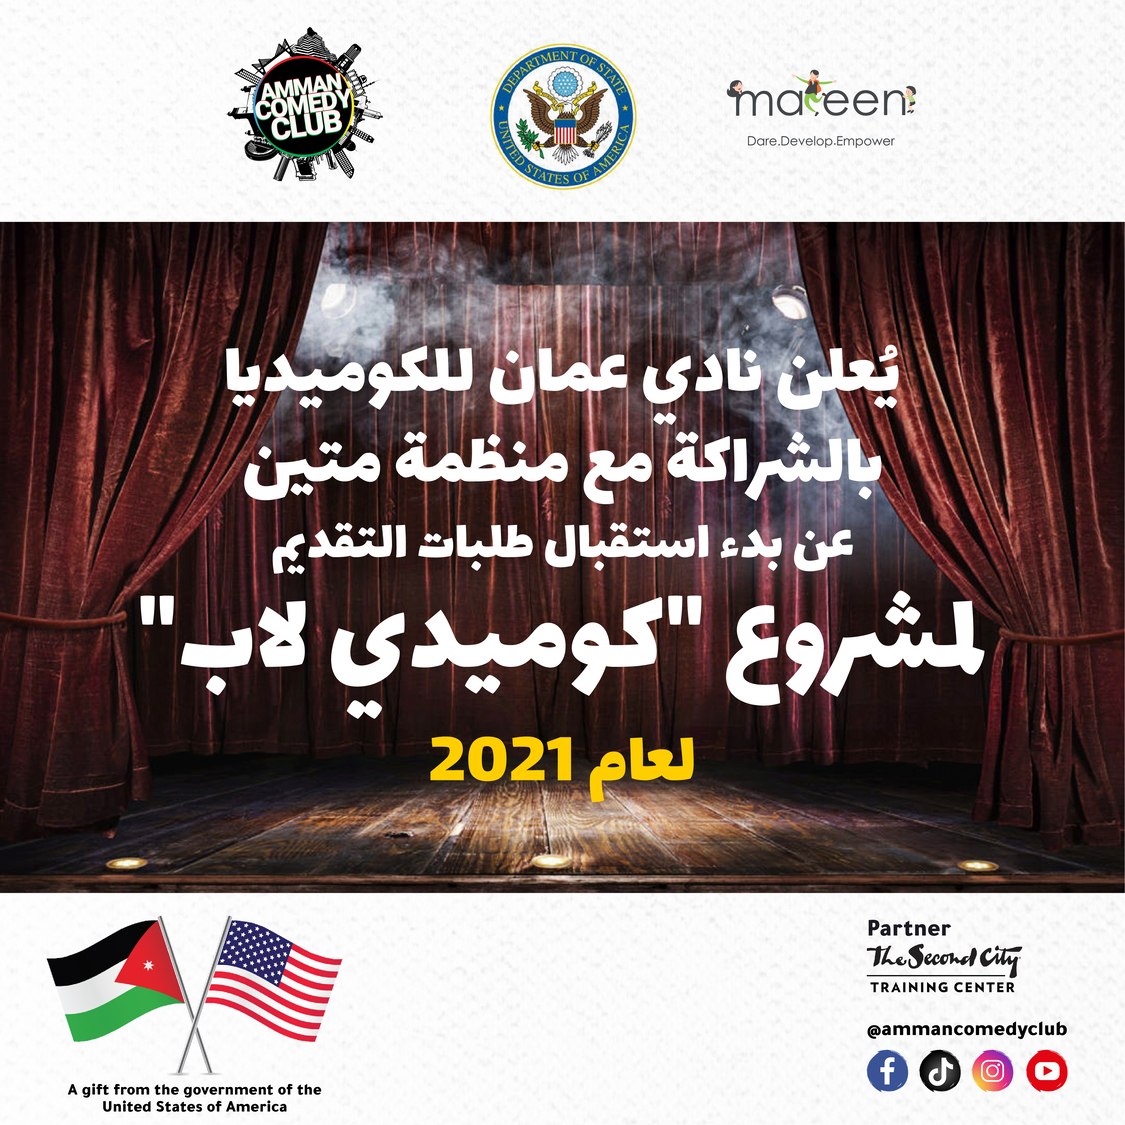 يُعلن نادي عمان للكوميديا بالشركة مع منظمة متين عن بدء استقبال طلبات التقديم لمشروع “كوميدي لاب” لعام 2021.